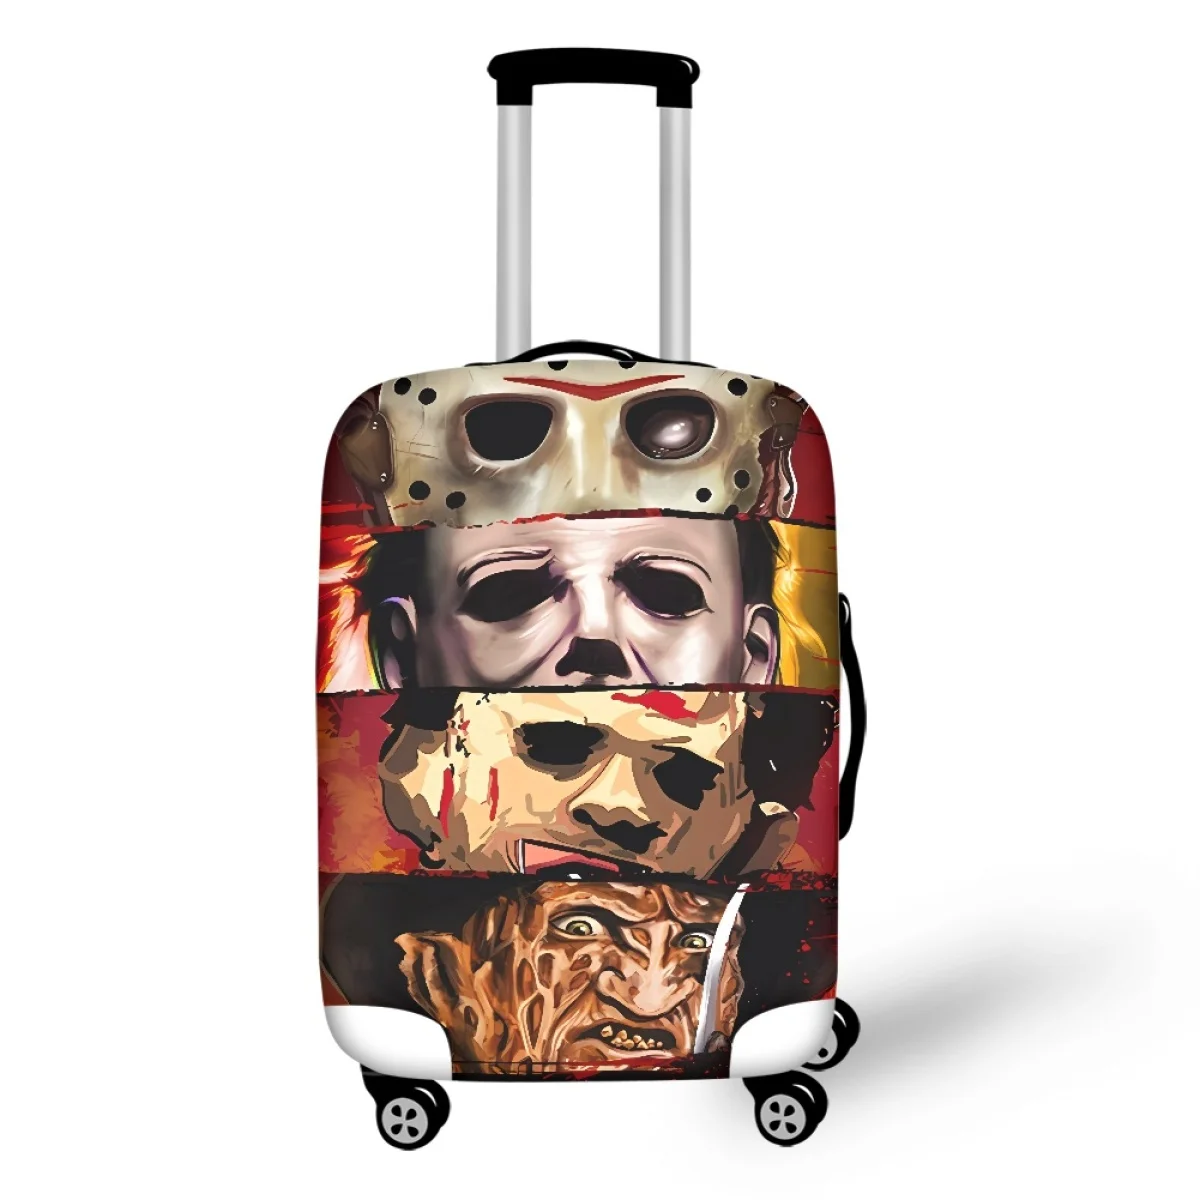 

Эластичный Чемодан, Защитные Чехлы, классический чемодан на колесиках с ужасными мотивами фильмов, 18-32 дюйма, пылезащитный чехол для багажа, чемоданы на колесах